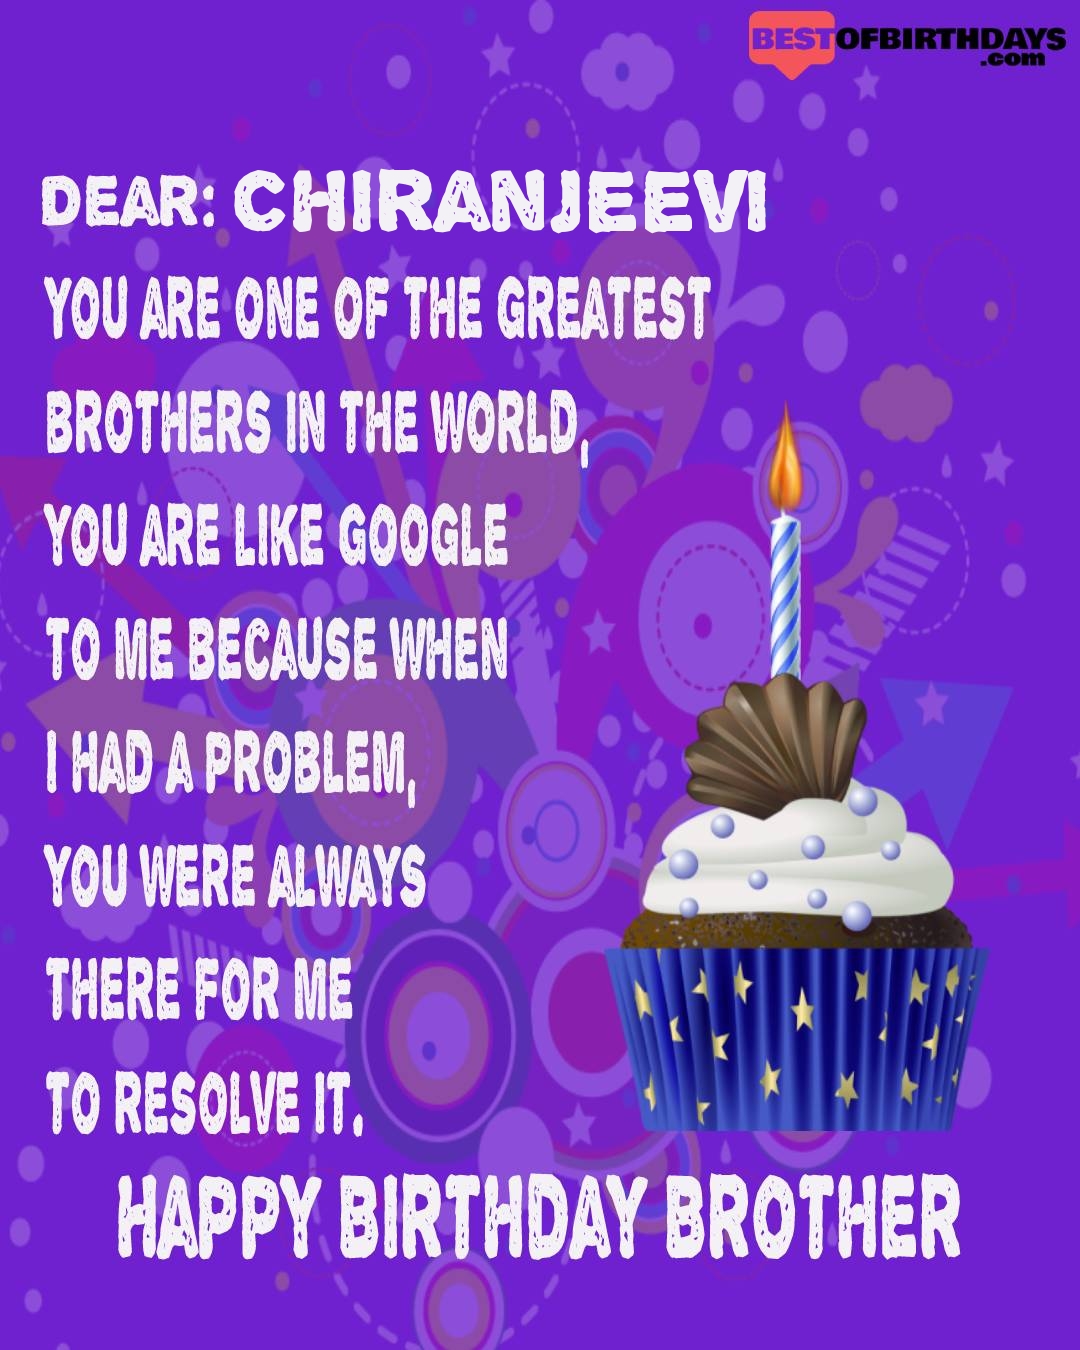 Happy birthday chiranjeevi bhai brother bro